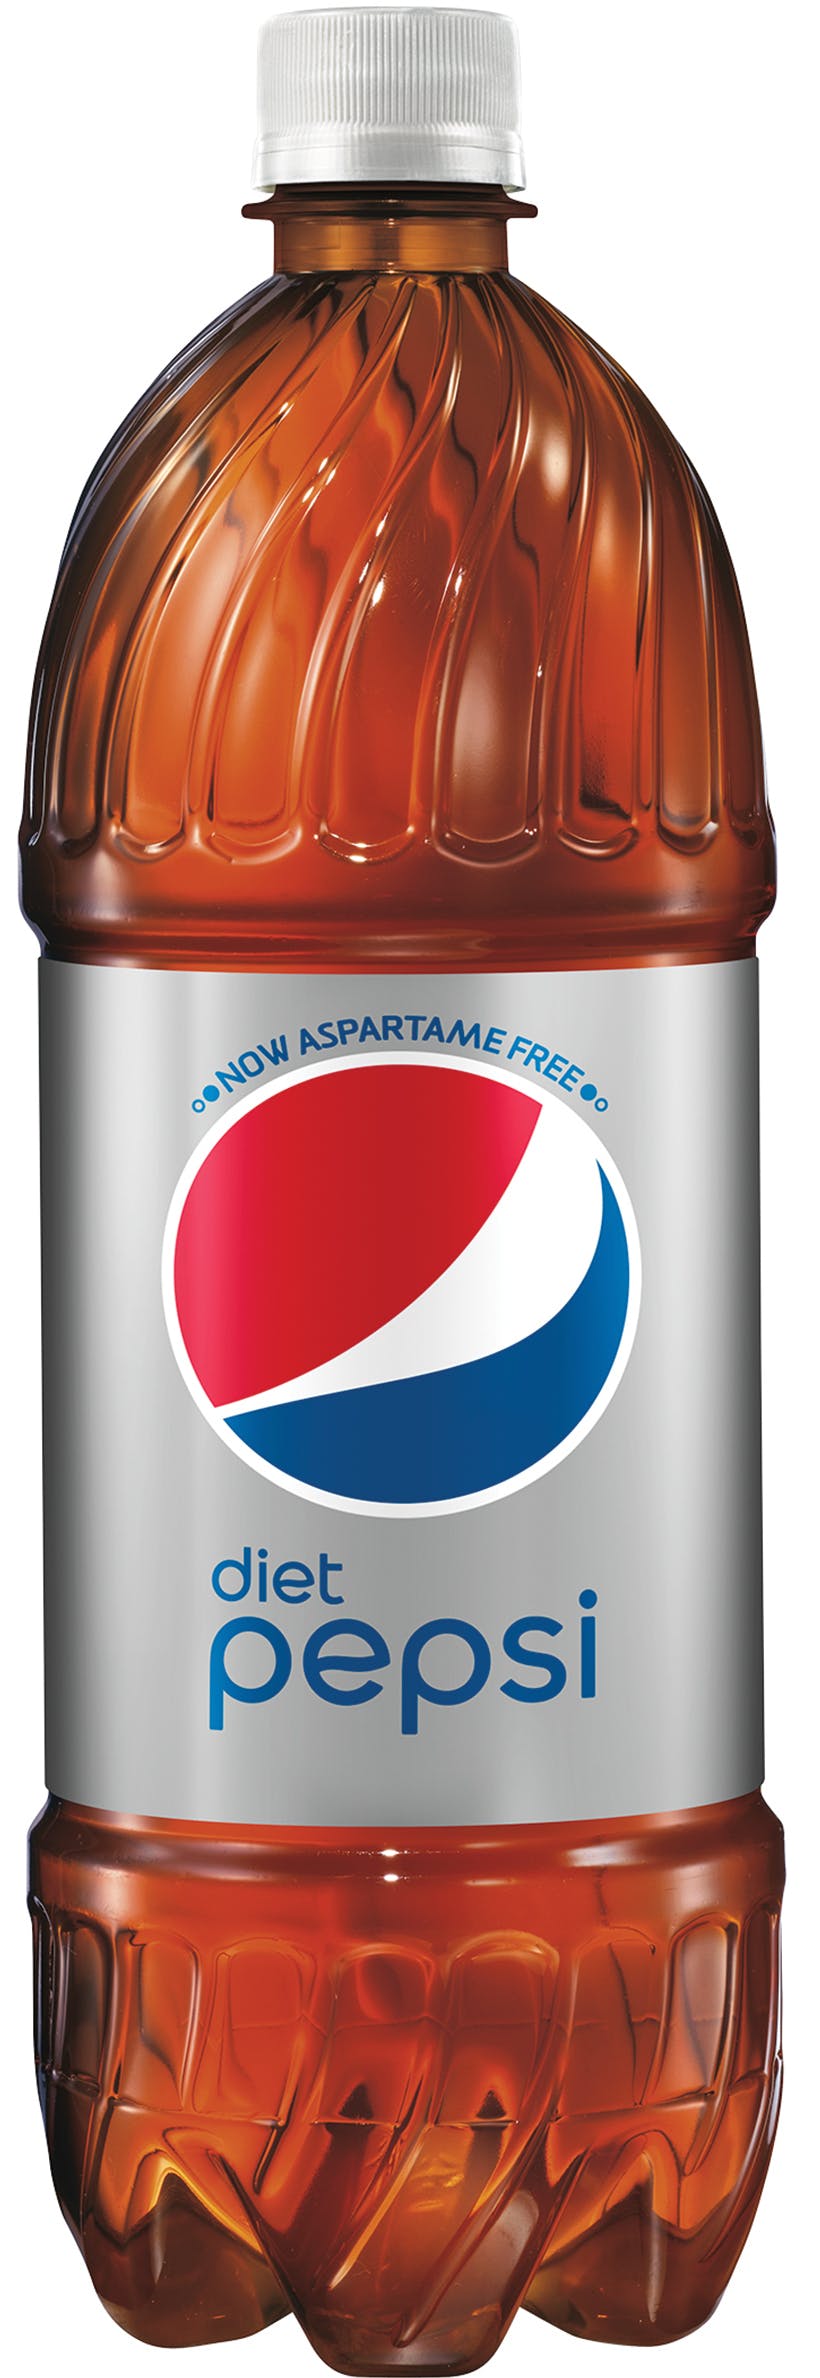 Pepsi 20 oz Soda Bottles (Pack of 24)